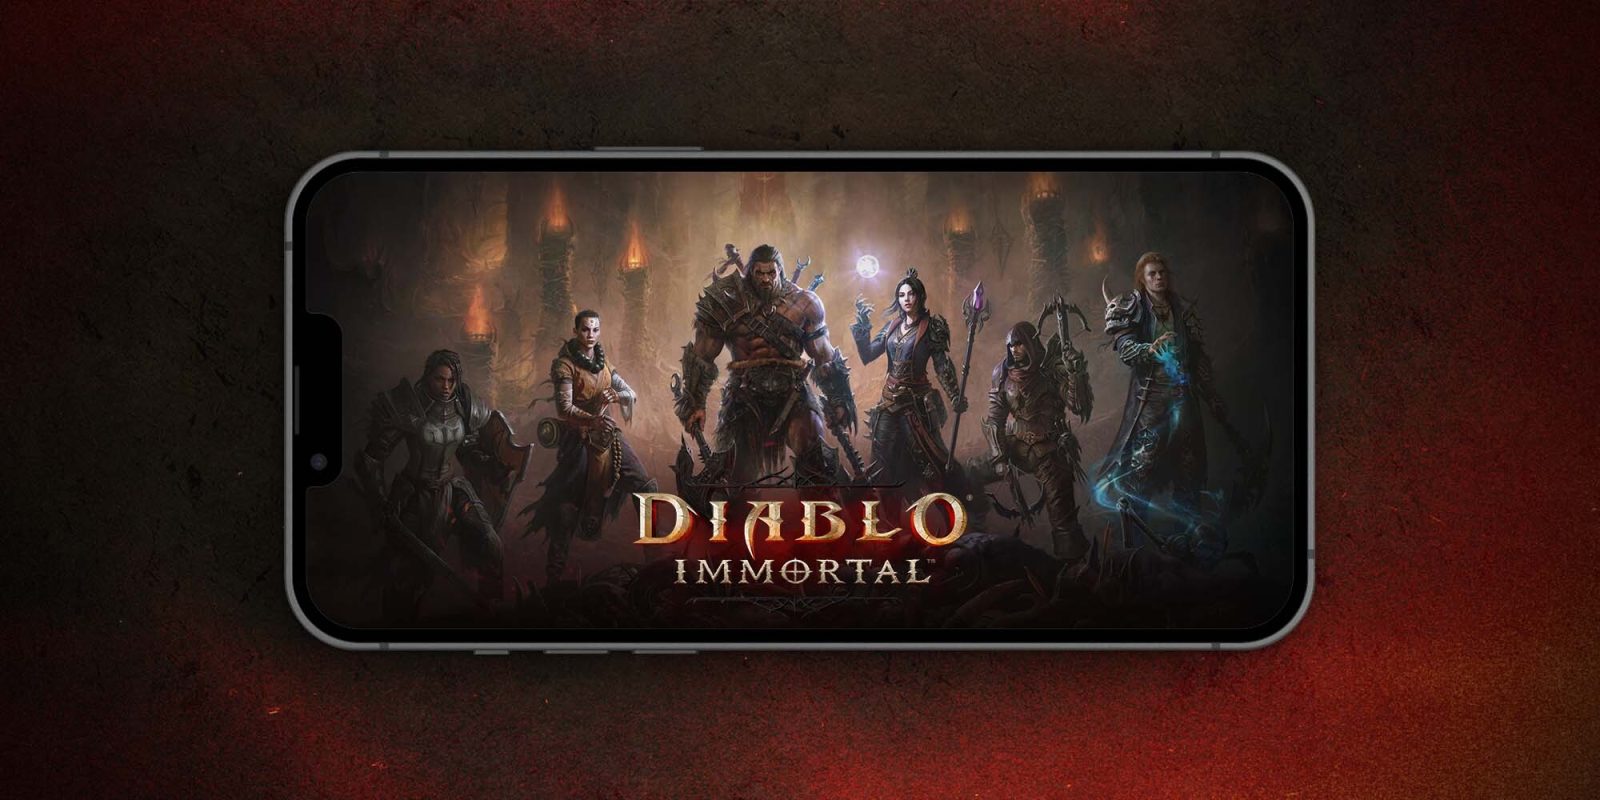 Diablo Immortal iOS game